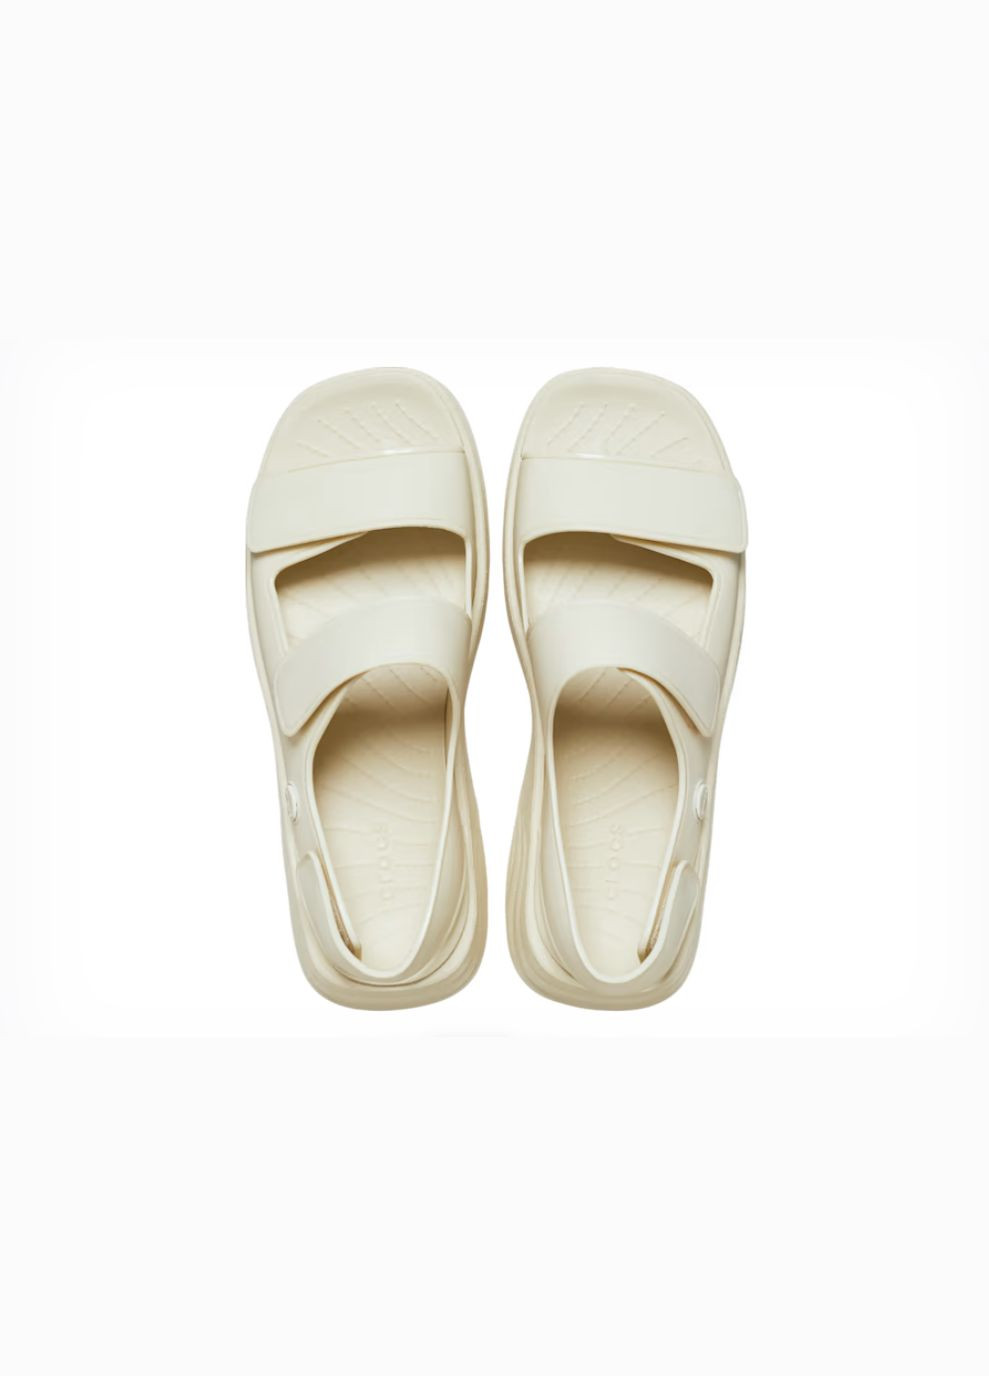 Повседневные женские сандалии skyline sandal bone 36-6-23 см Crocs